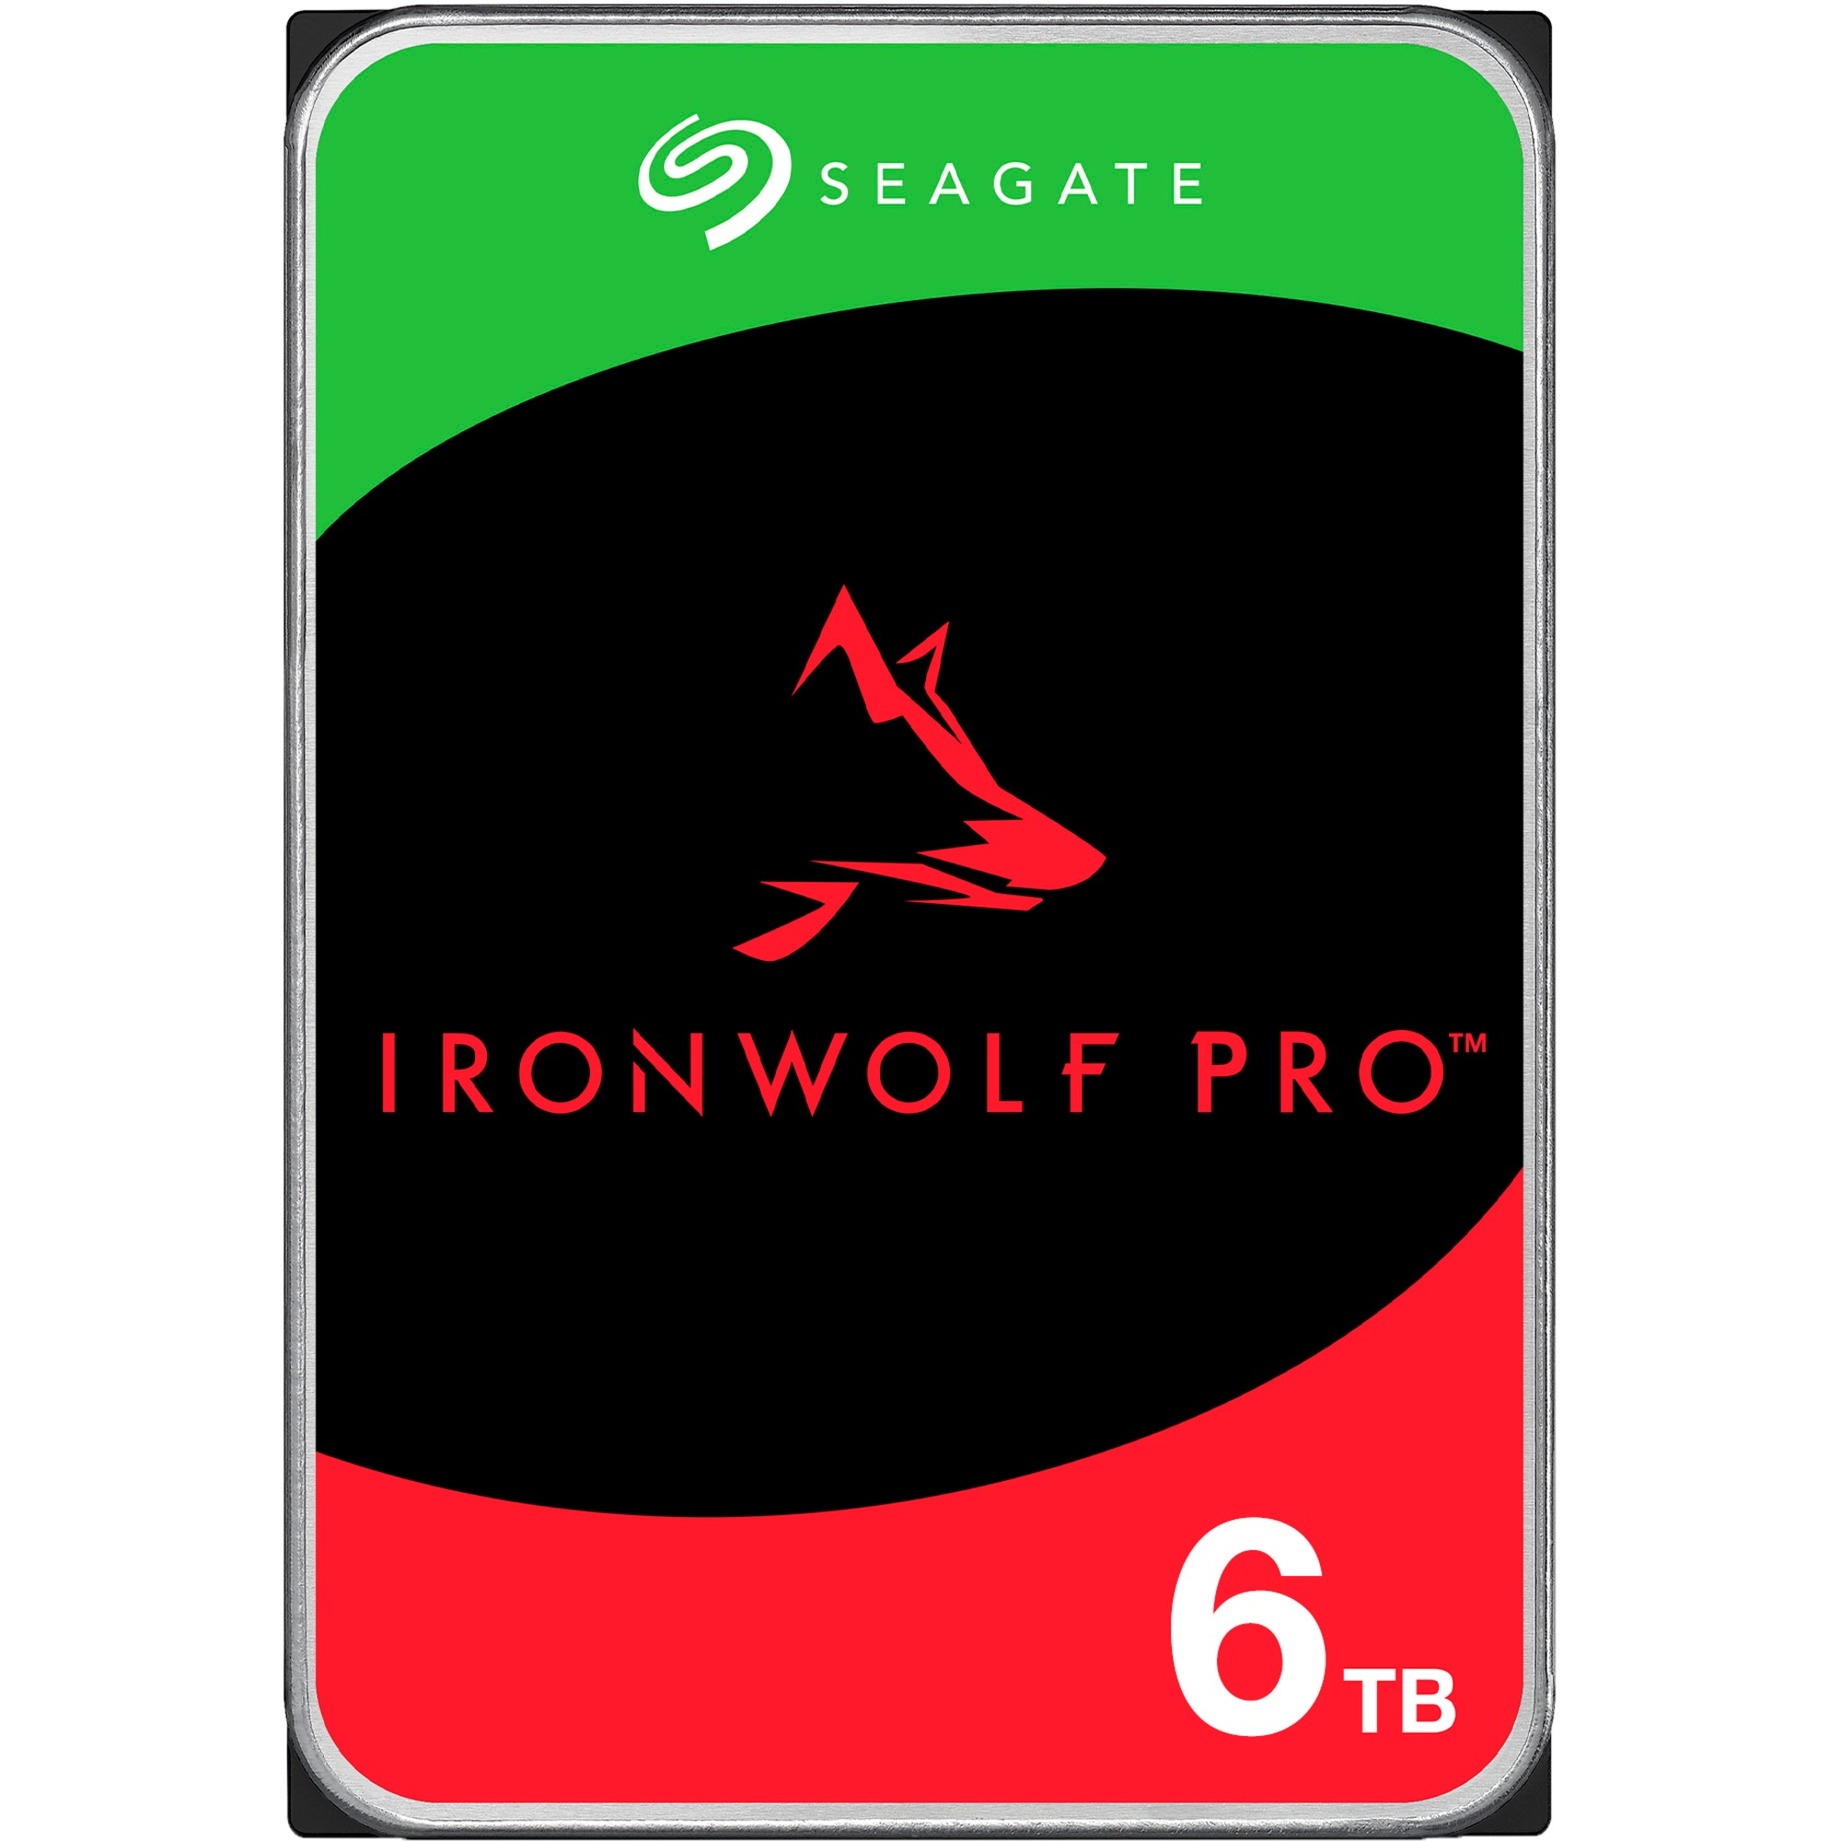 IronWolf Pro NAS 6 TB CMR, Festplatte von Seagate